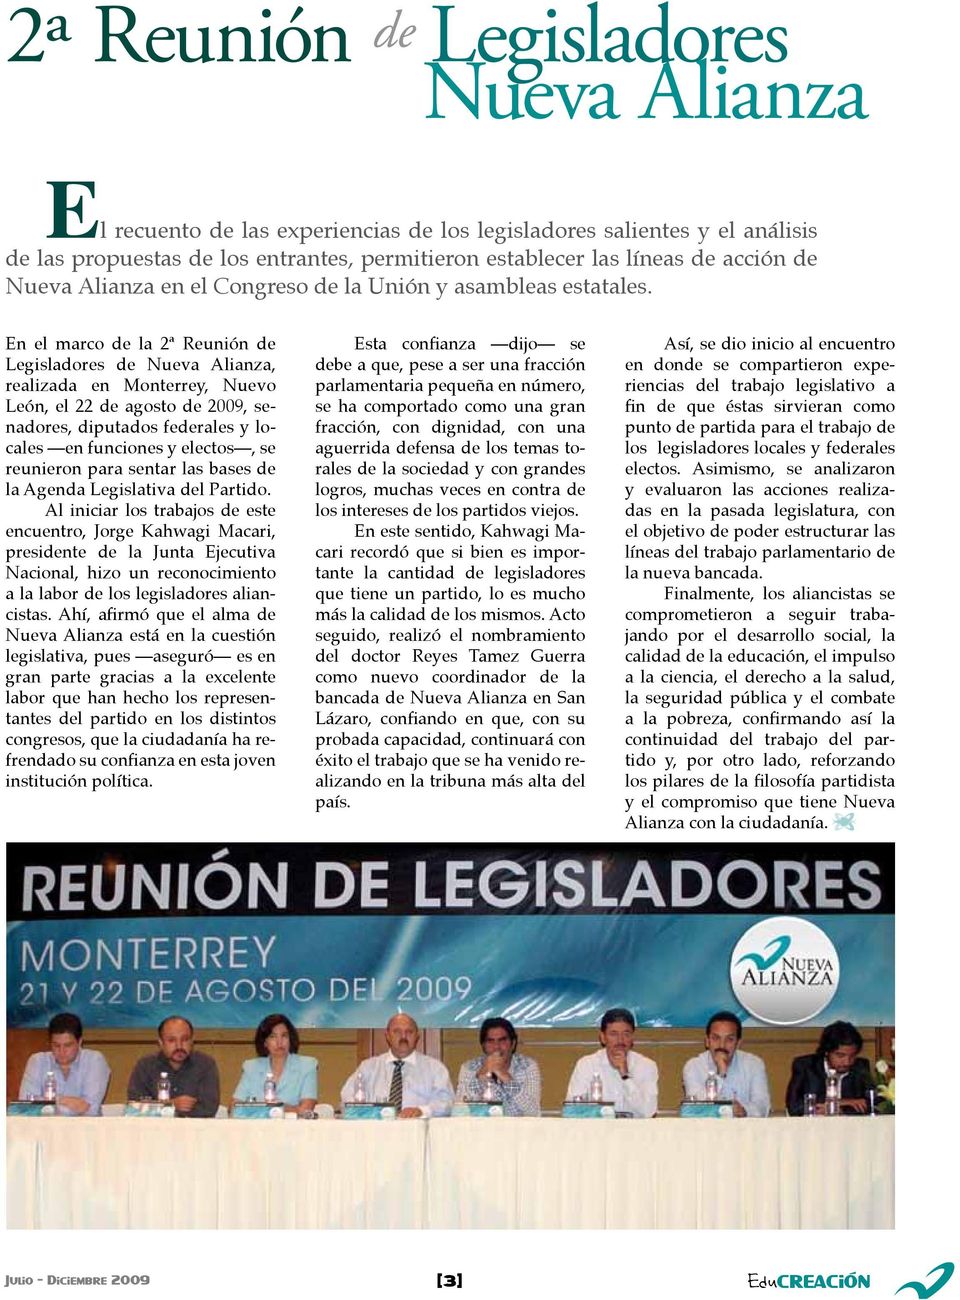 En el marco de la 2ª Reunión de Legisladores de Nueva Alianza, realizada en Monterrey, Nuevo León, el 22 de agosto de 2009, senadores, diputados federales y locales en funciones y electos, se